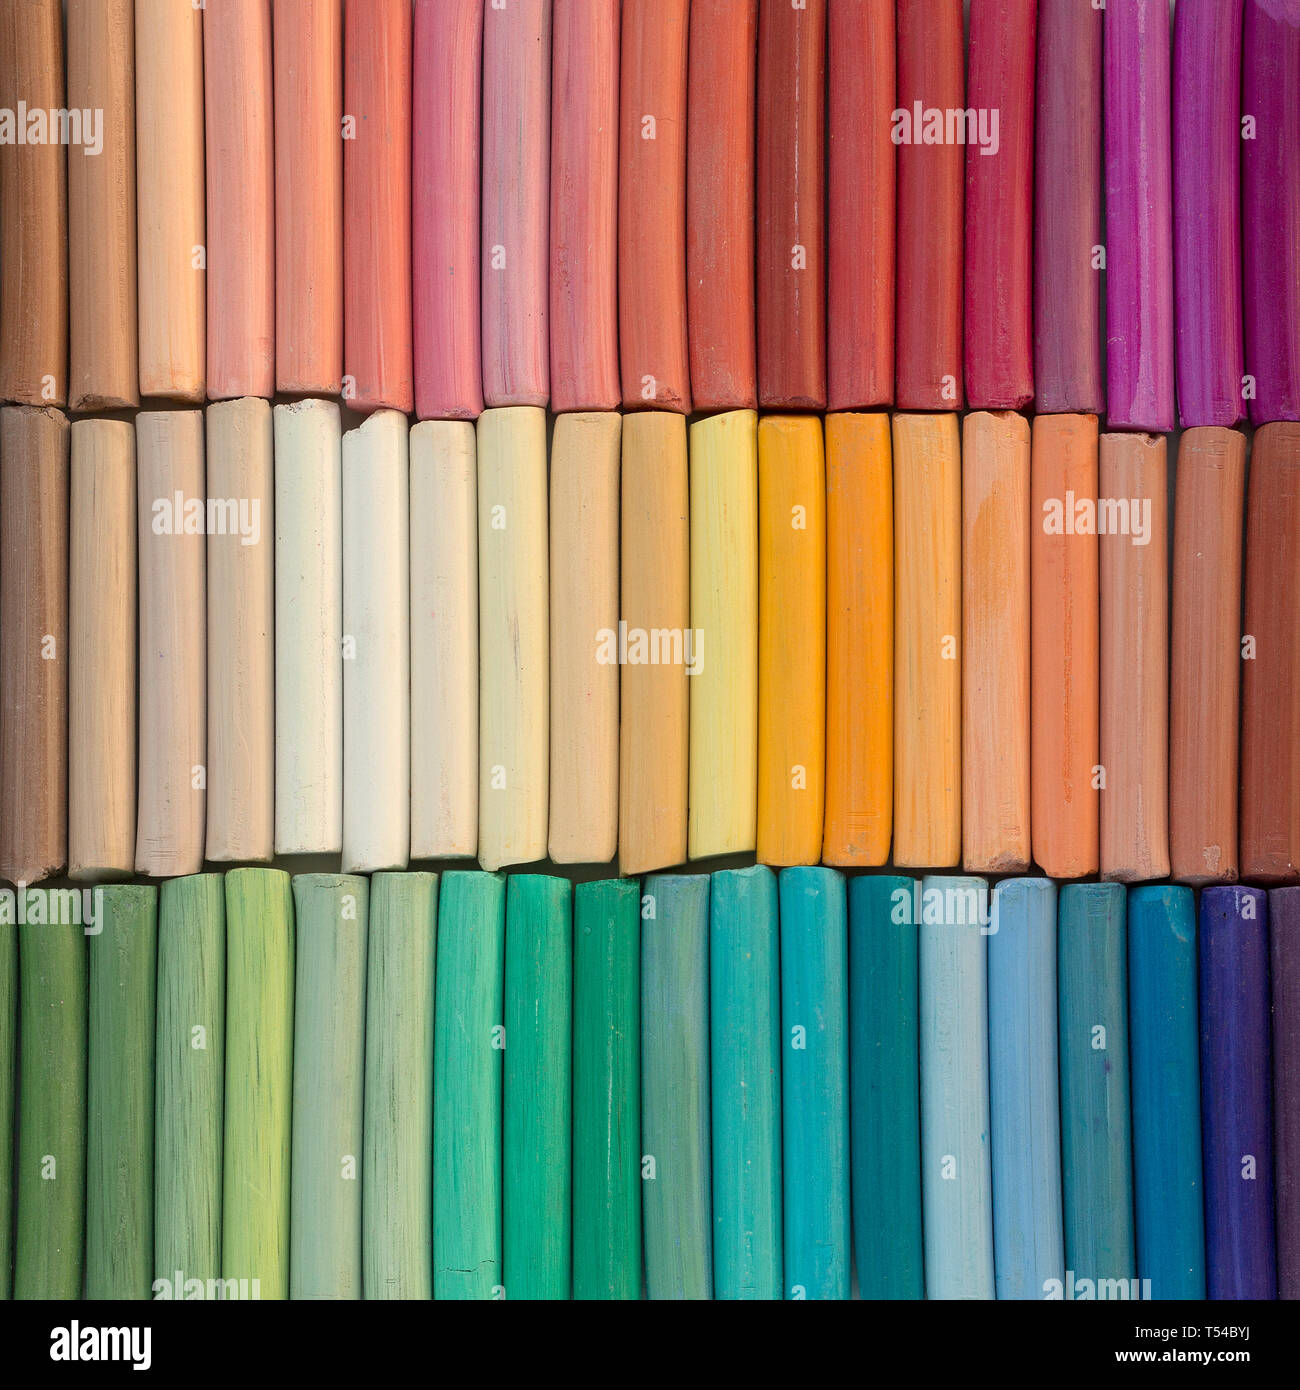 Rainbow matite di colore pastello in righe come sfondo. Immagine quadrata Foto Stock